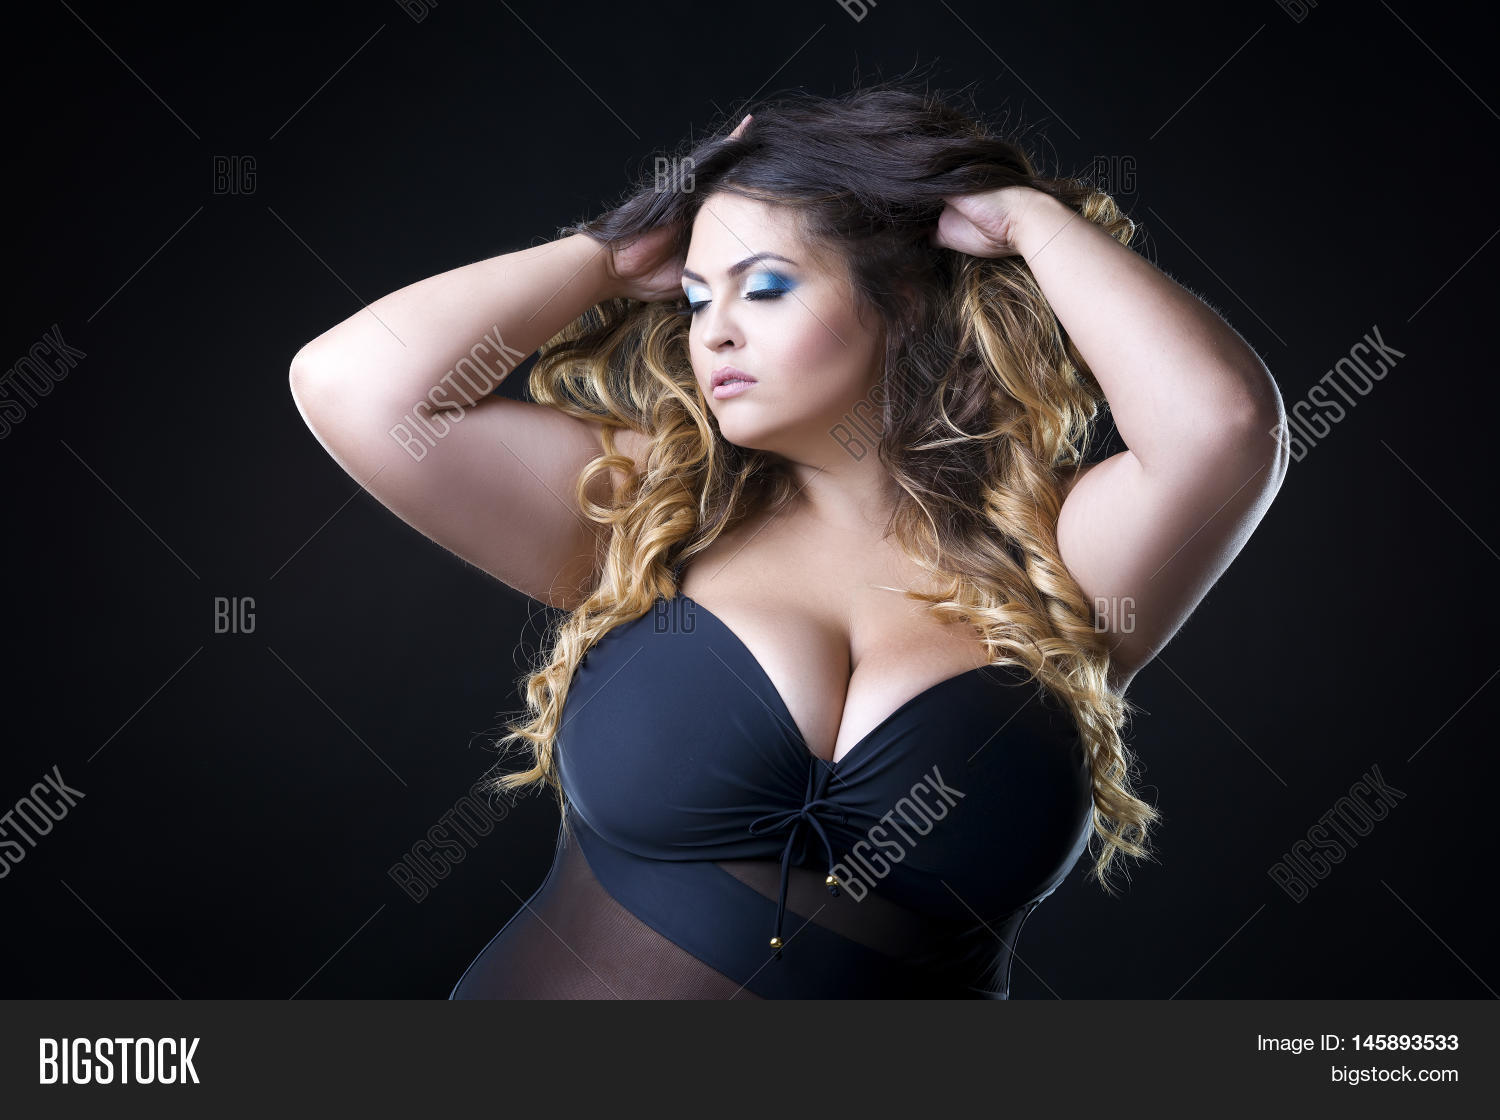 alona alonso add photo big and beautiful breast